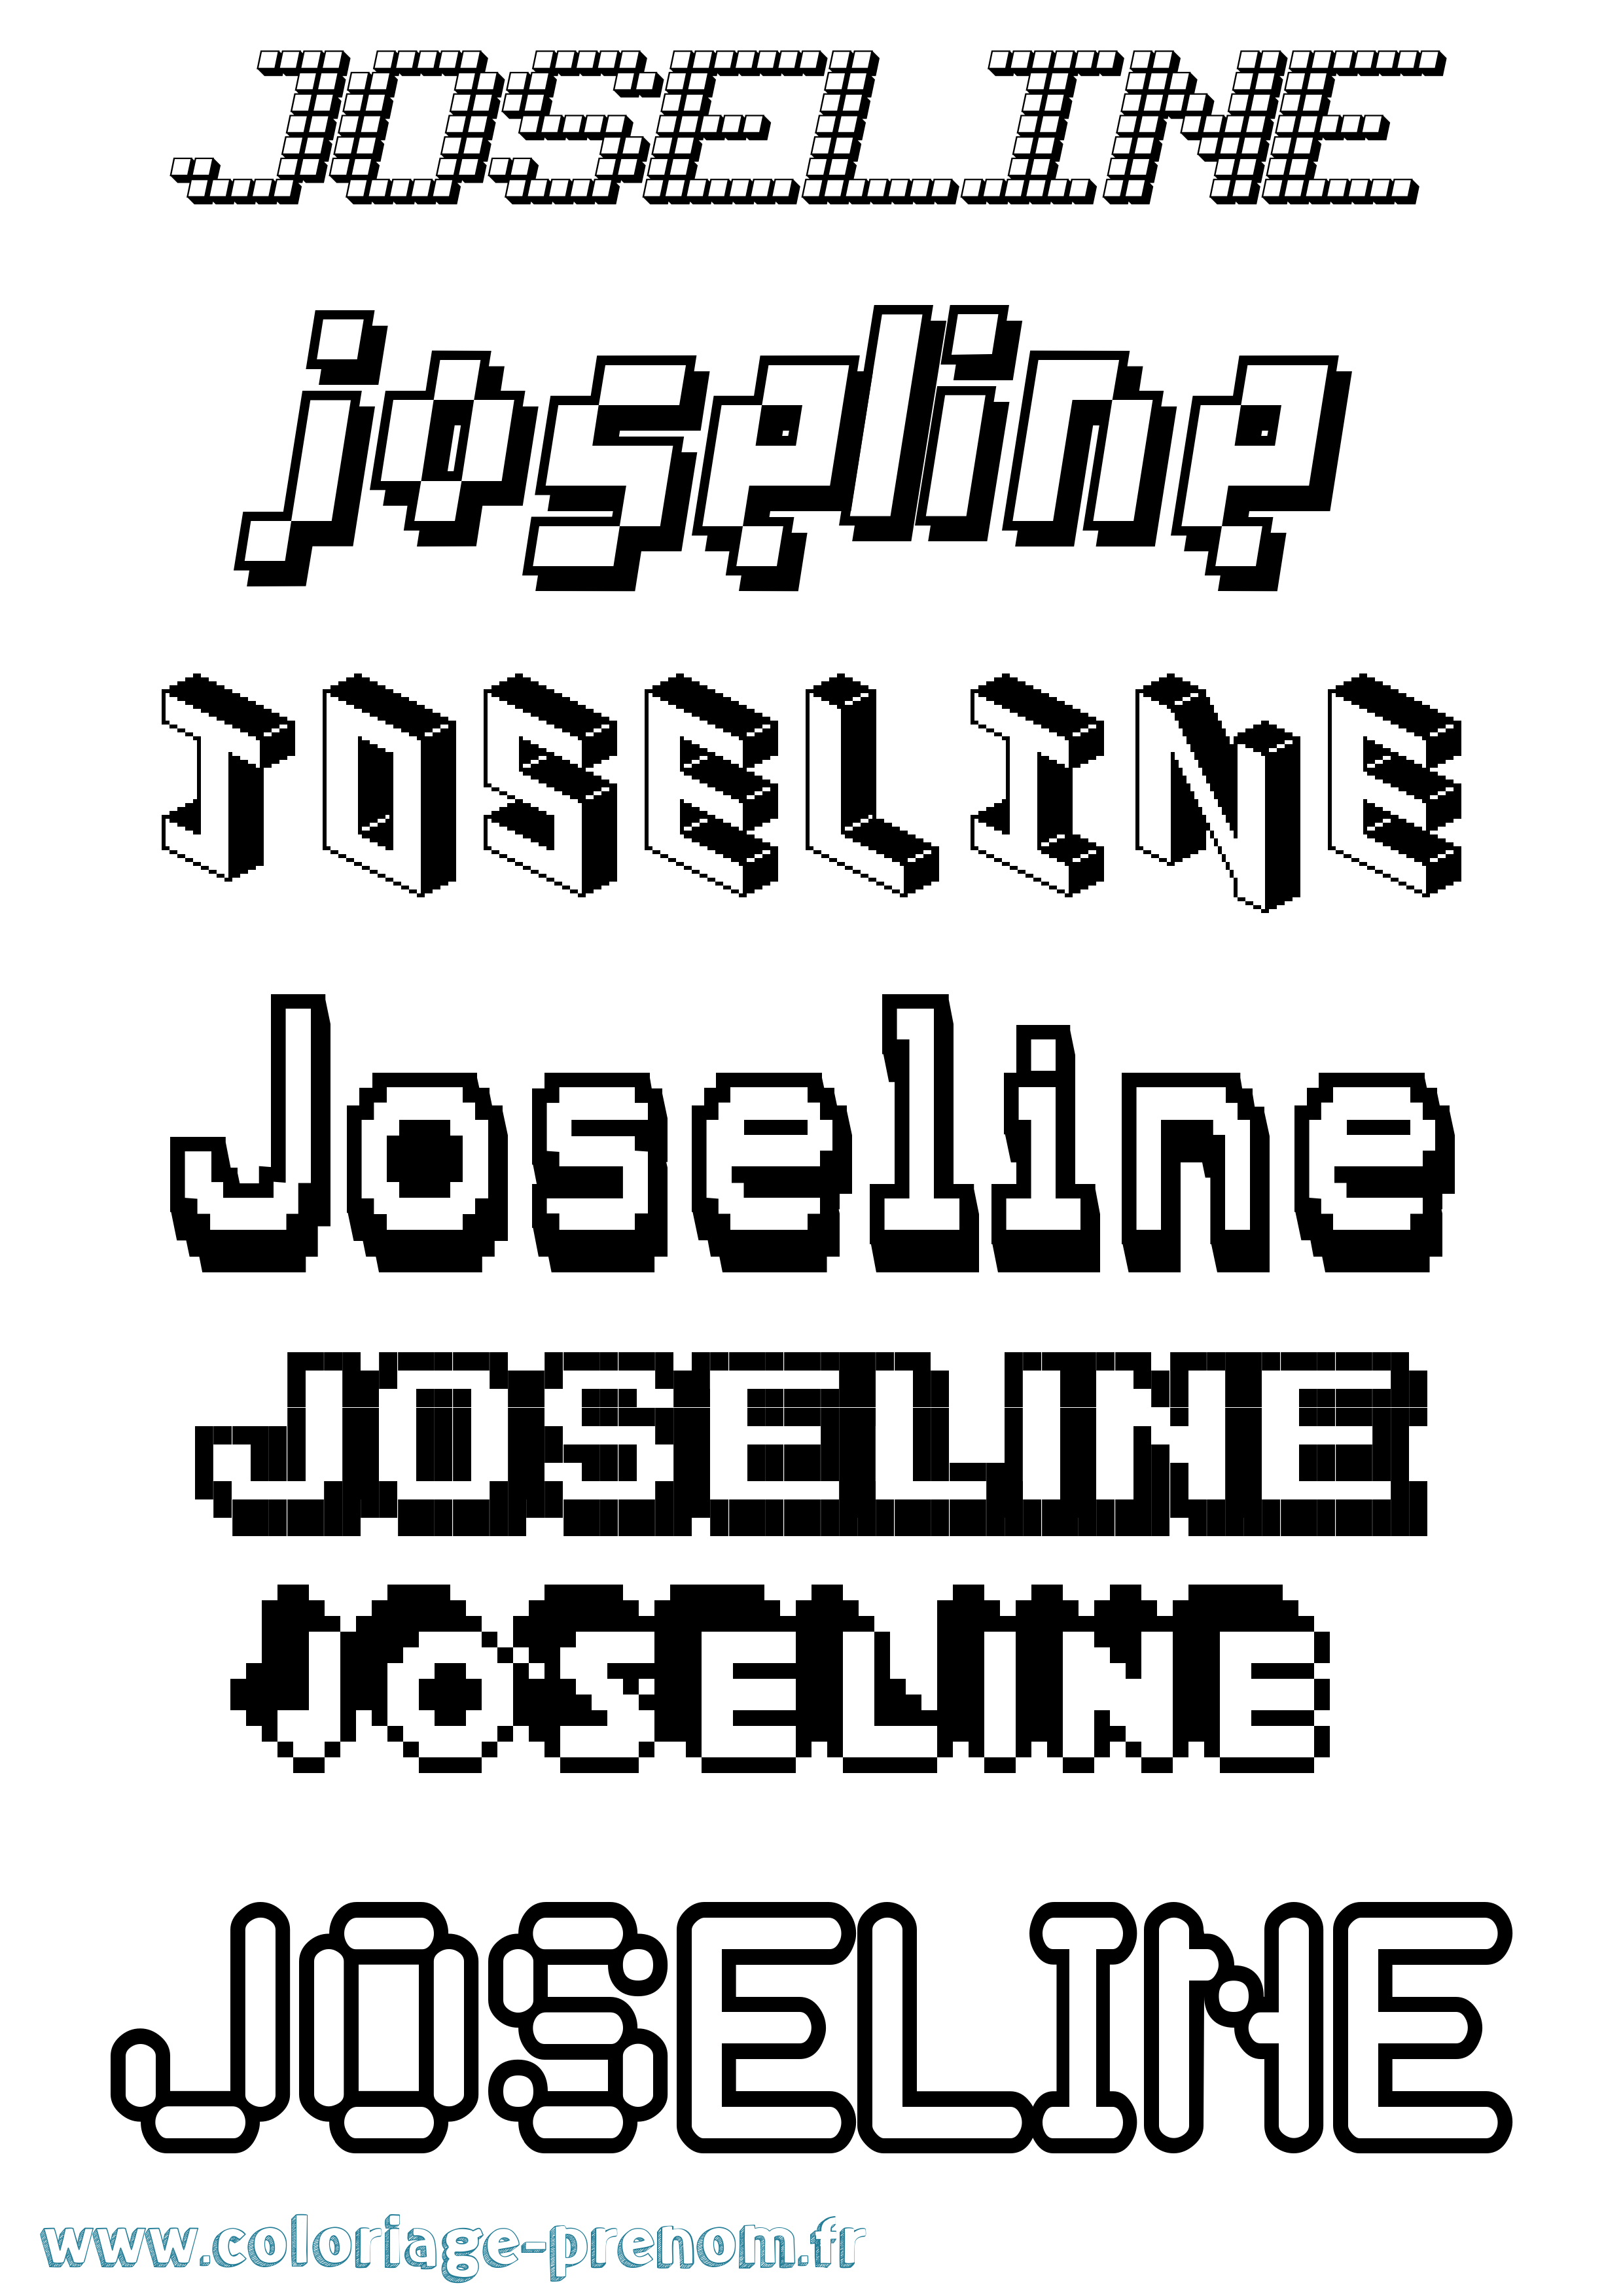 Coloriage prénom Joseline Pixel